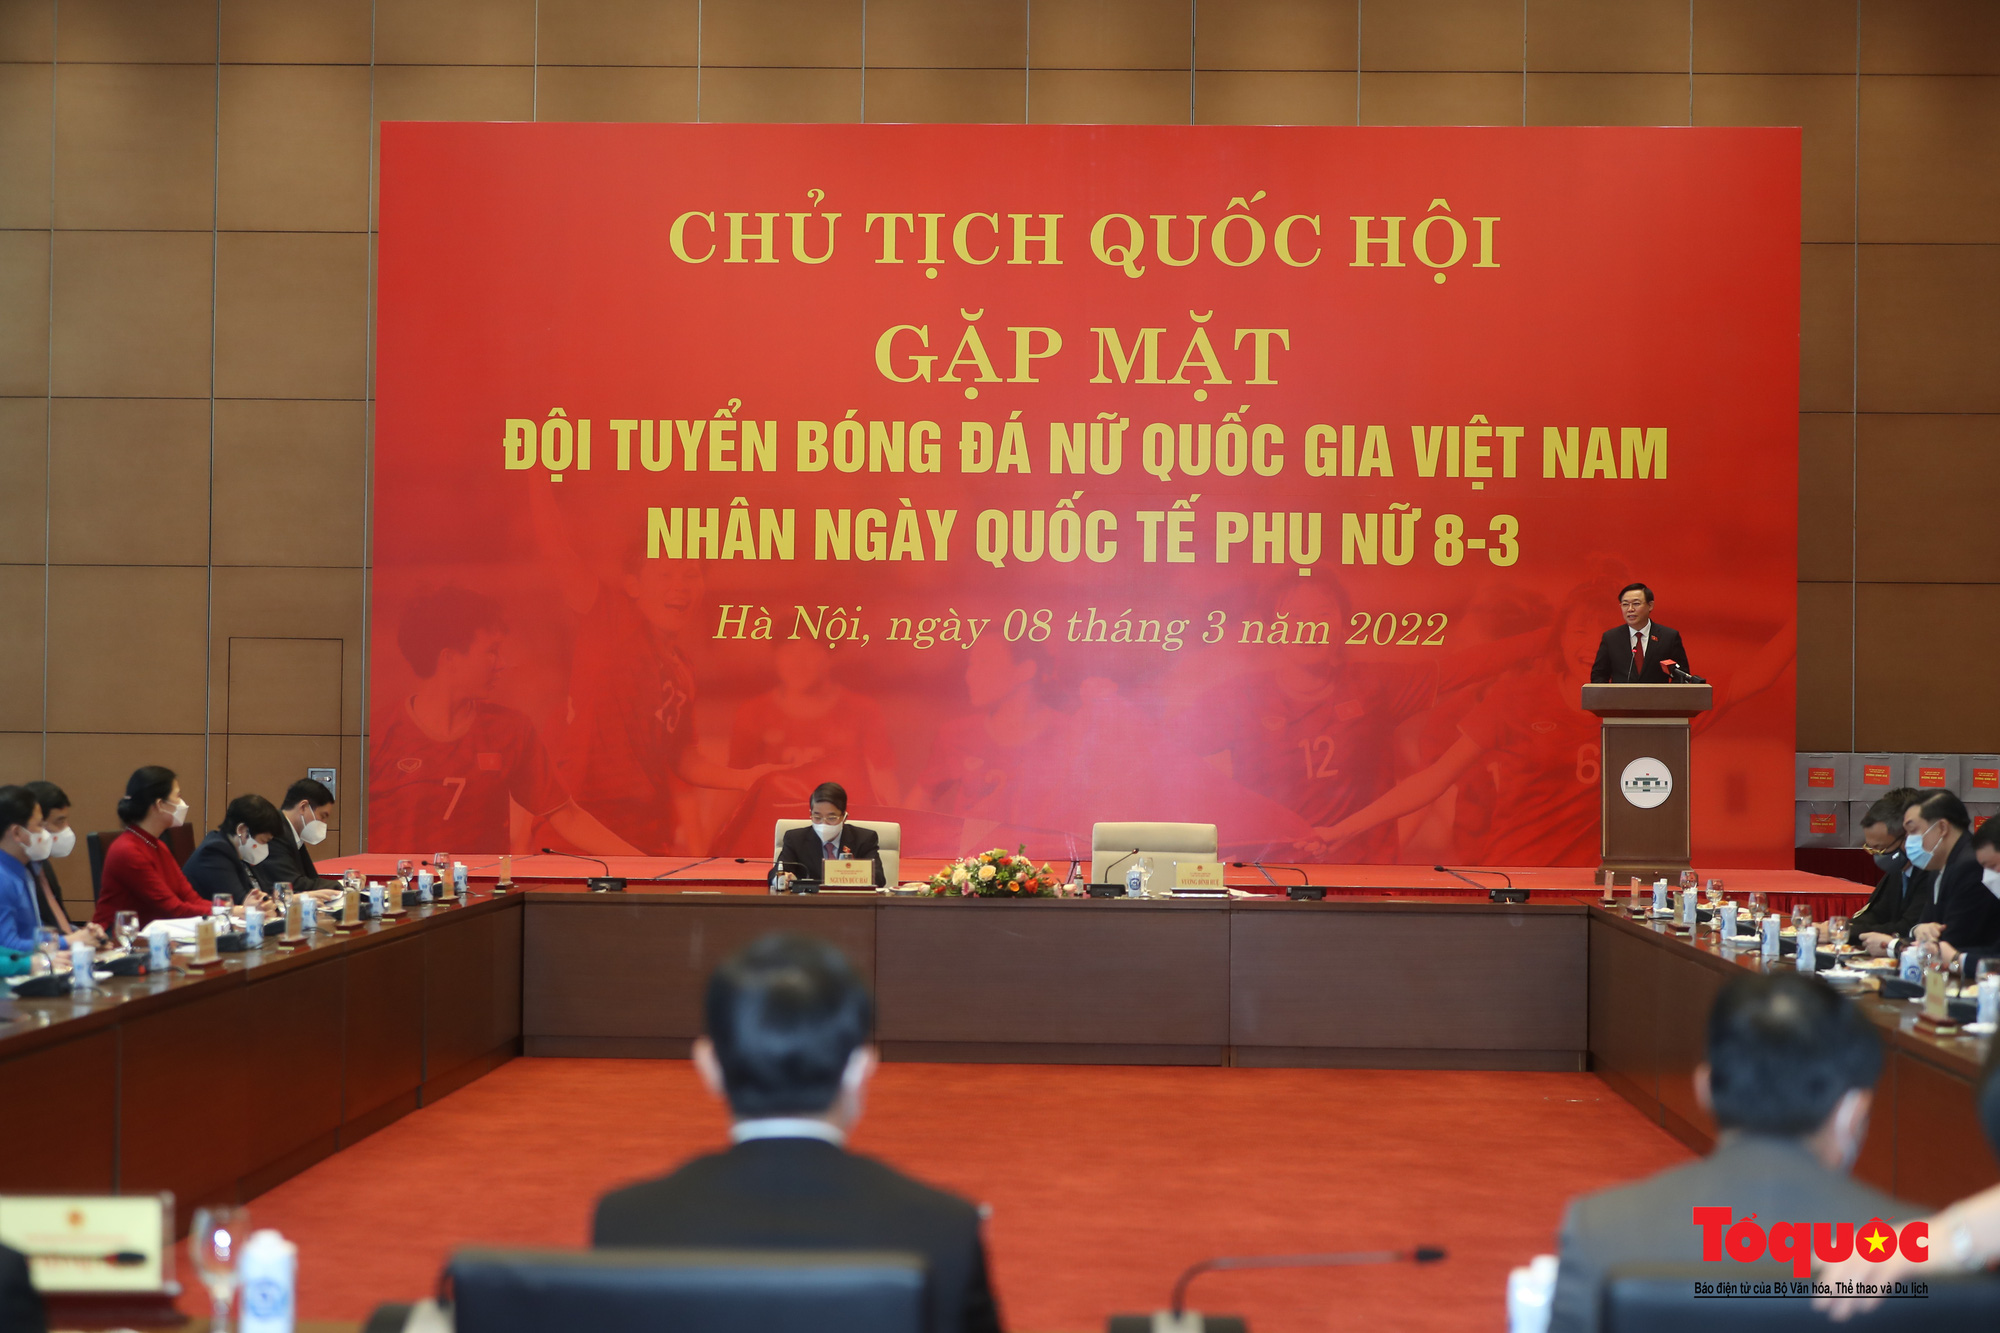 Chủ tịch Quốc hội Vương Đình Huệ gặp mặt Đội tuyển Bóng đá nữ Việt Nam - Ảnh 5.